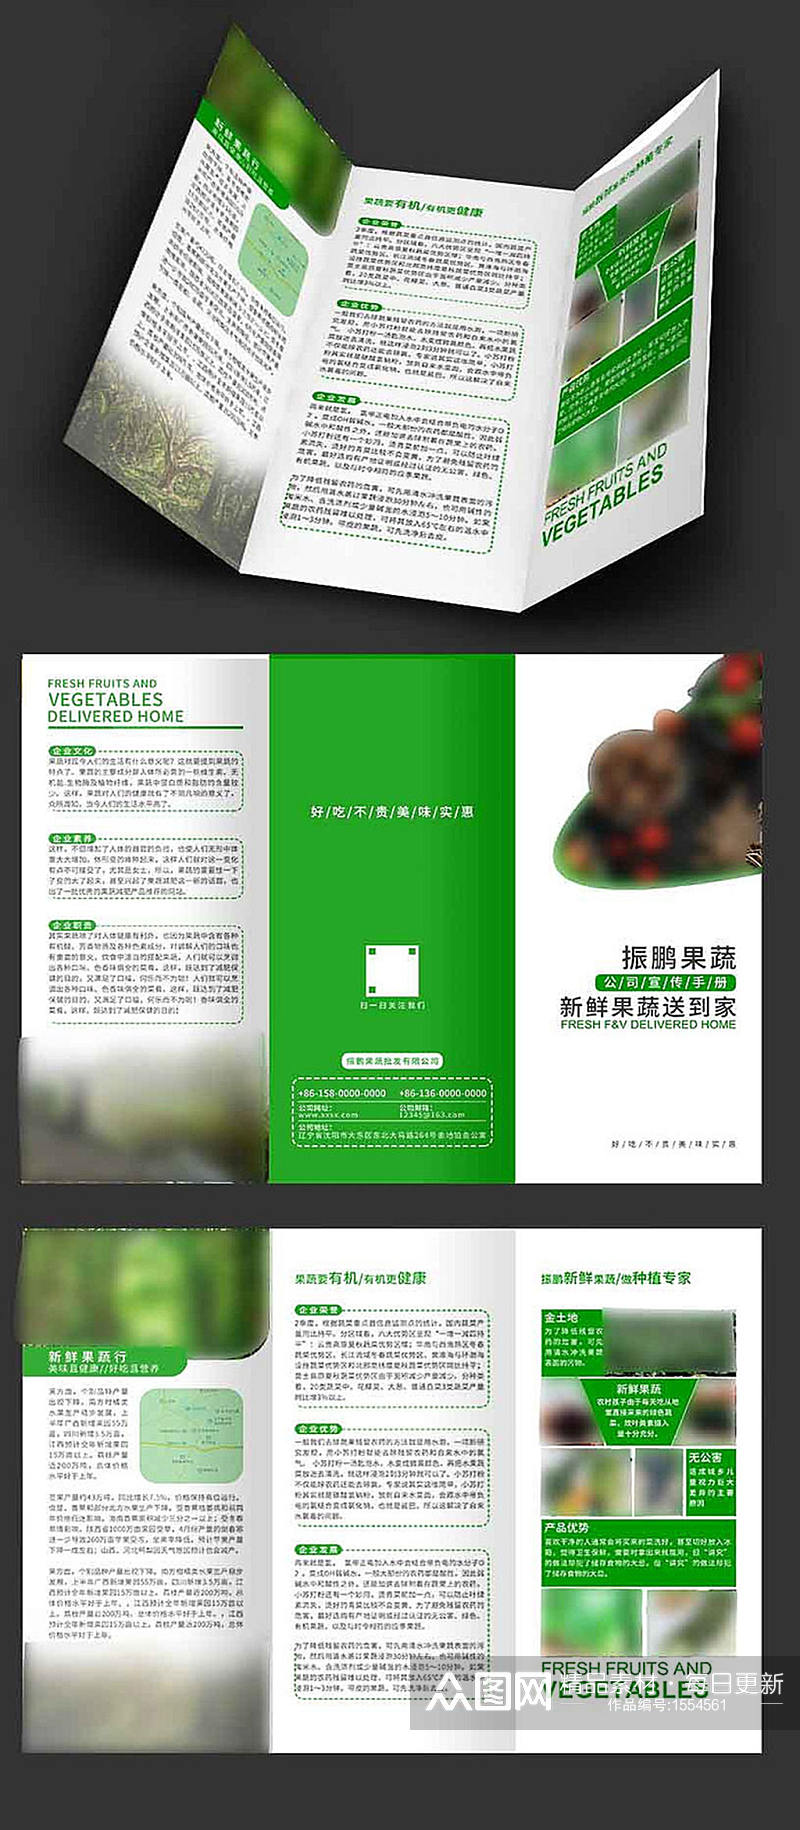 绿色环保三折页设计素材